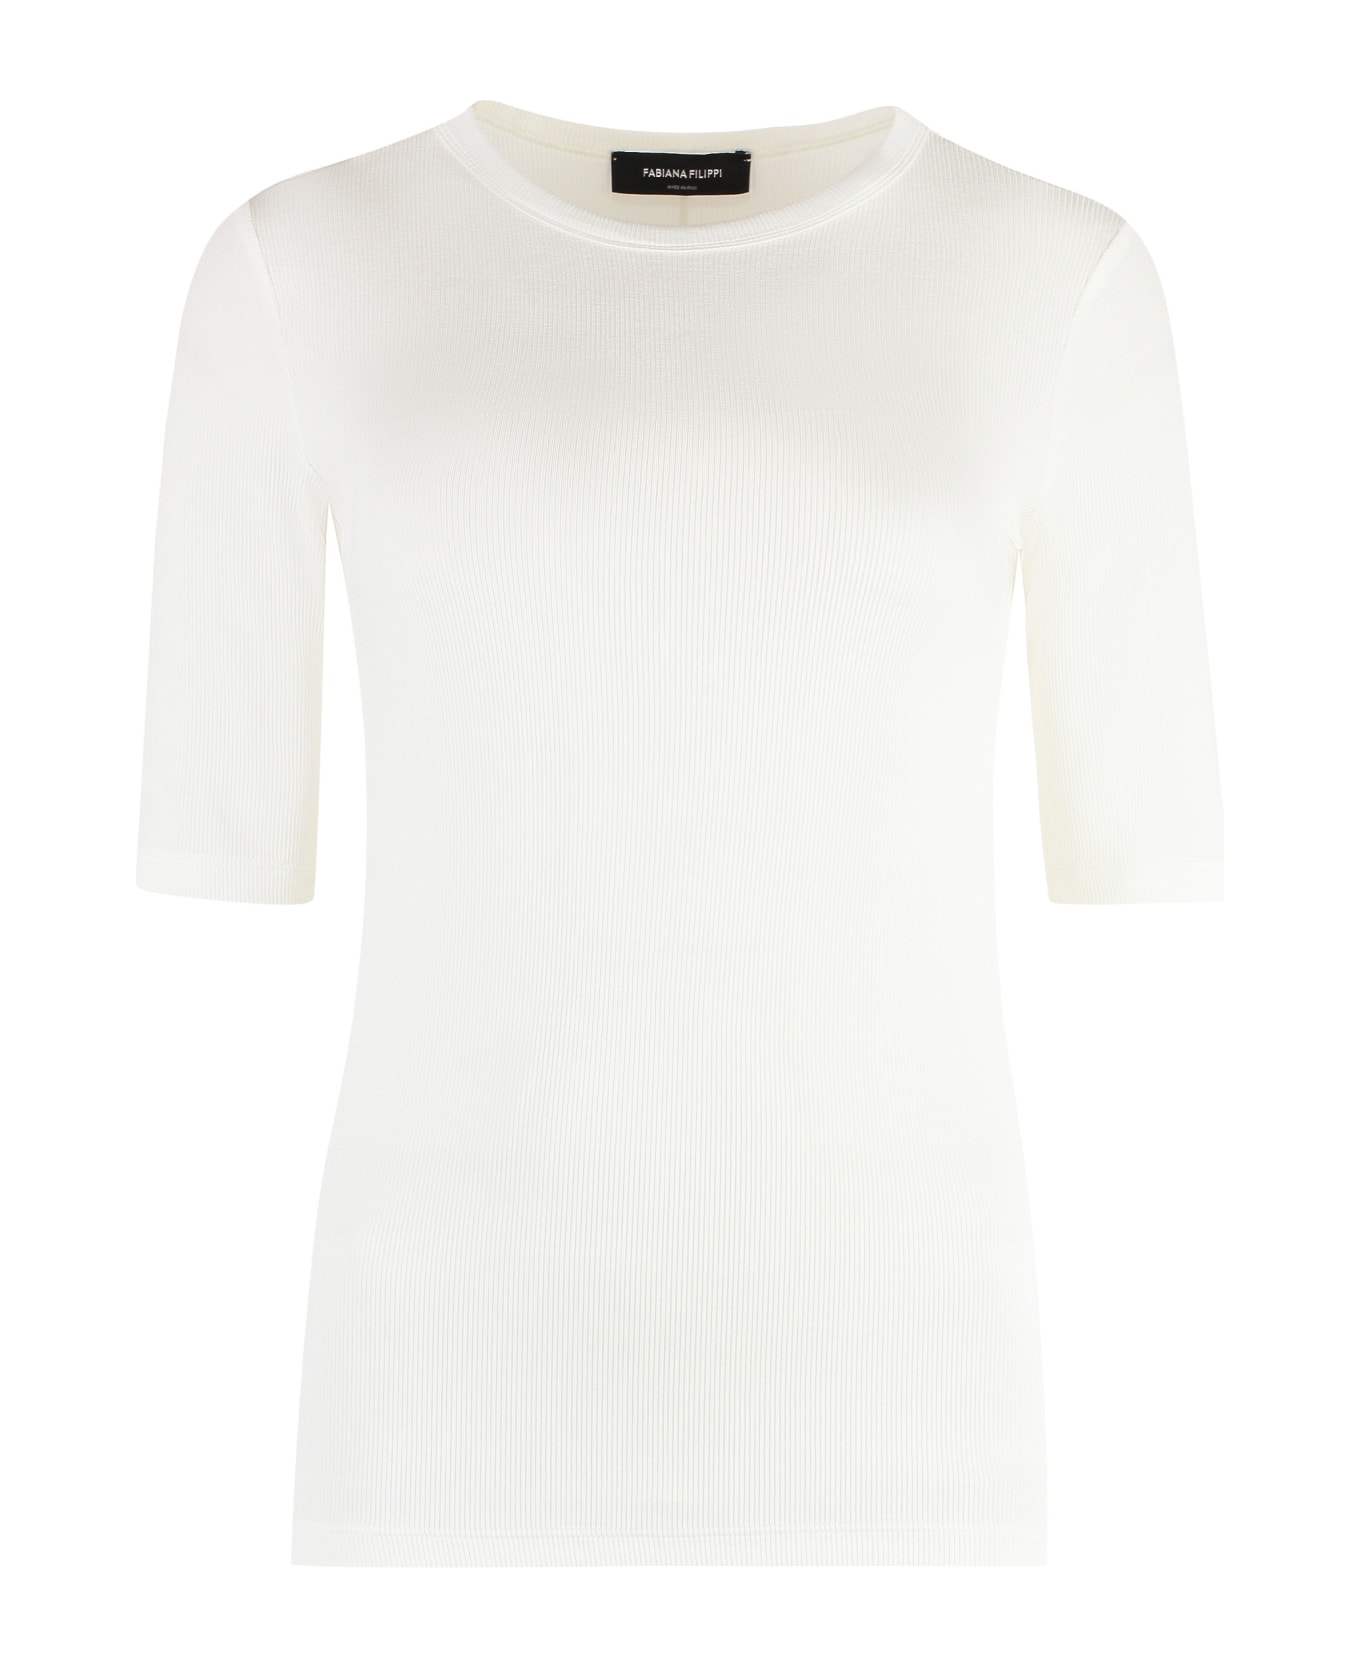 Fabiana Filippi Viscose Crew-neck T-shirt - White